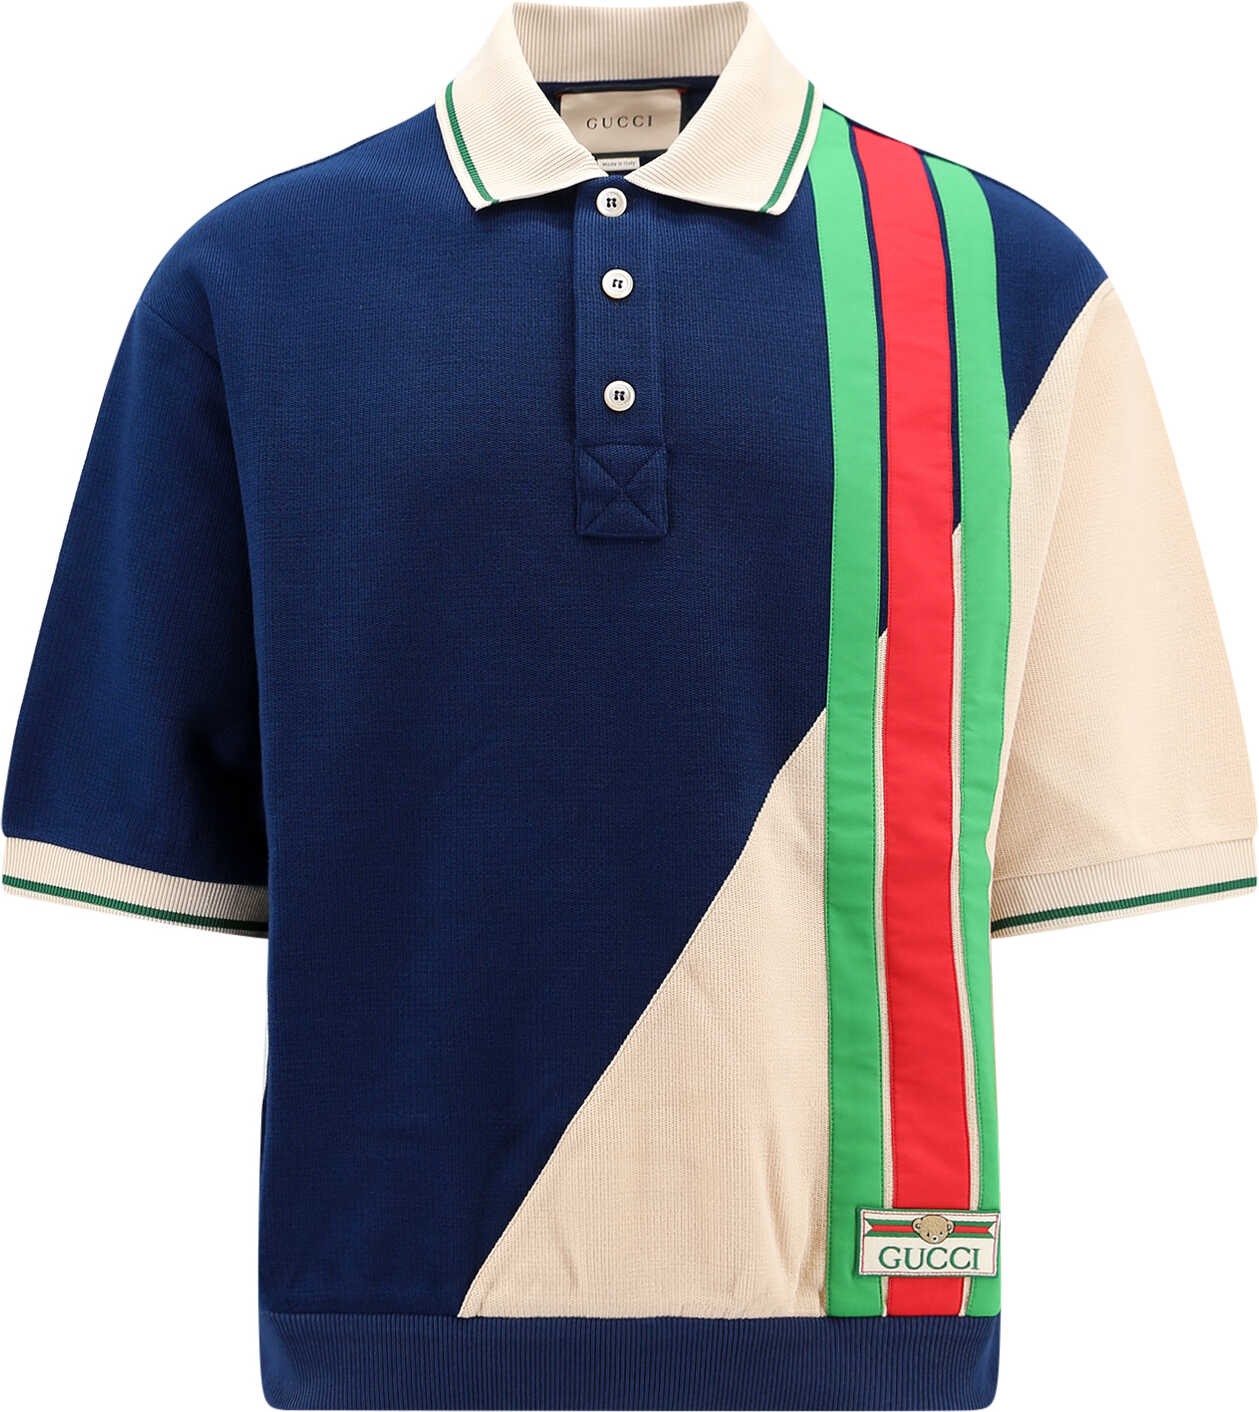 Gucci Polo Shirt Blue